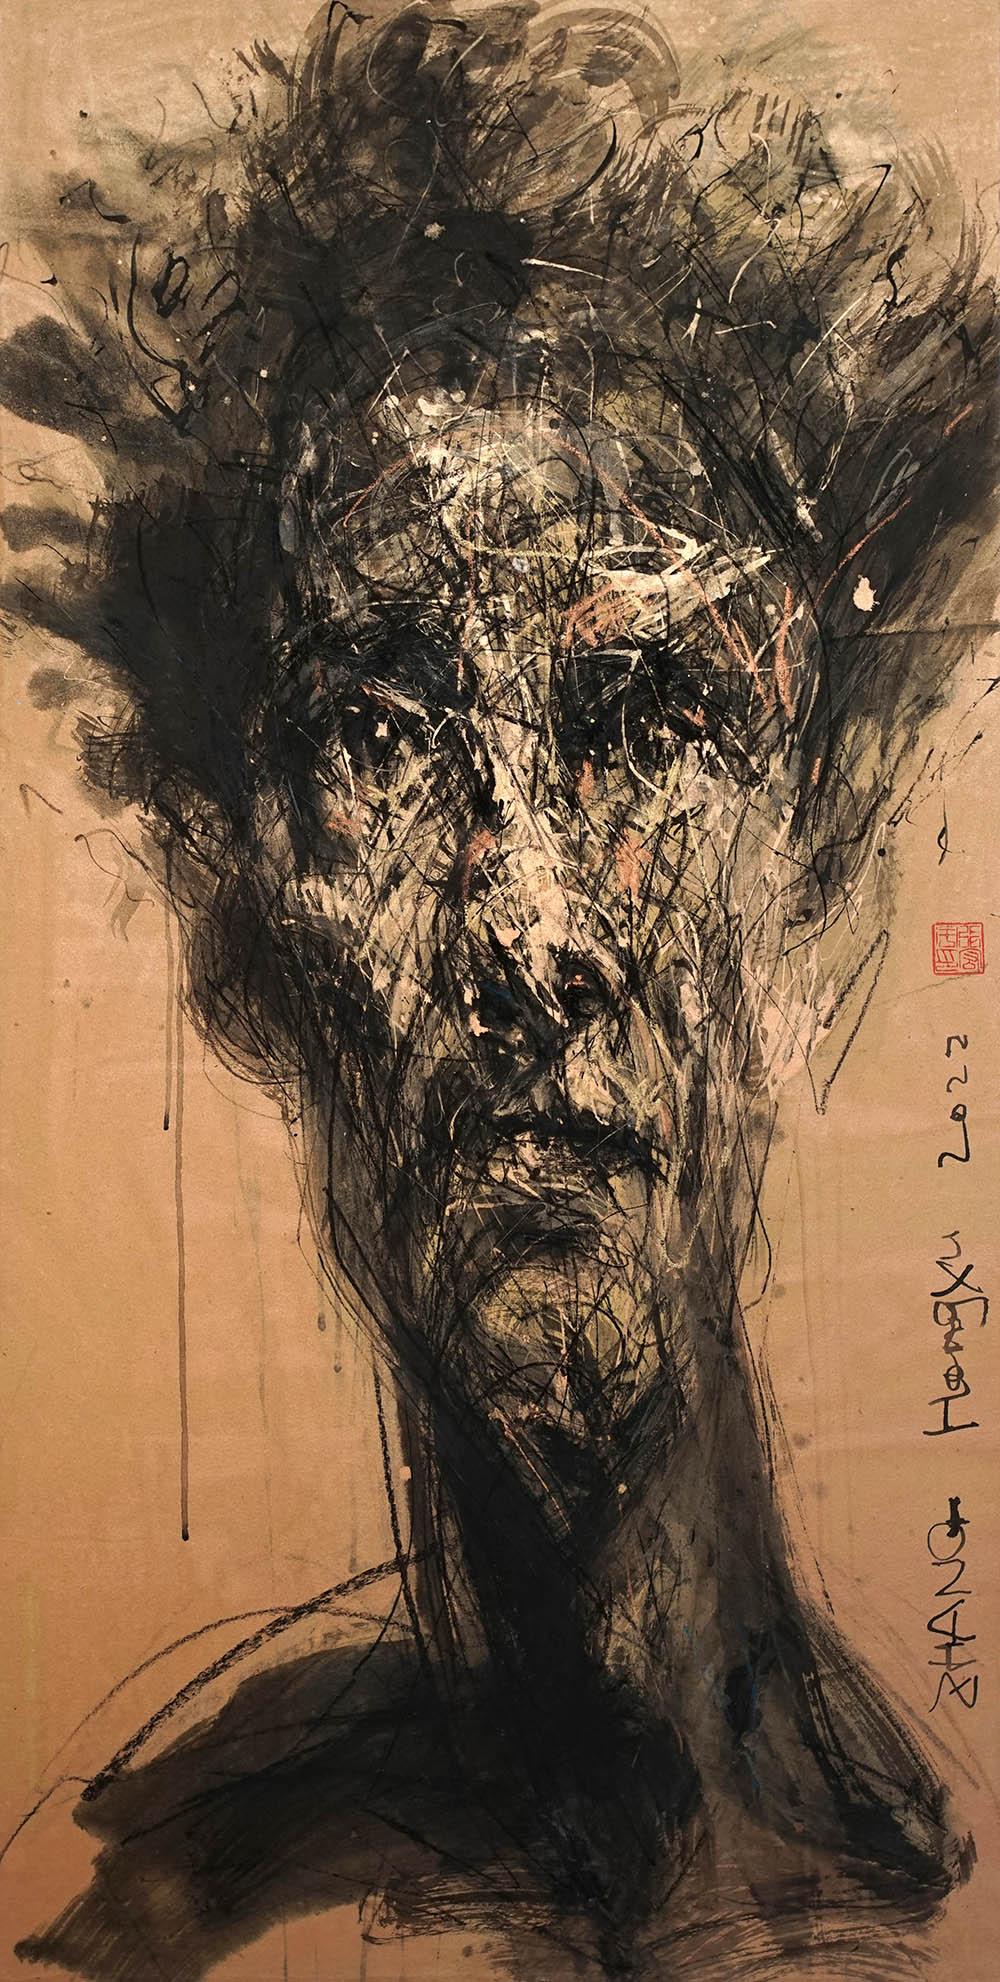 Zhang Hongyu Portrait Painting - No. 206 by Hongyu Zhang - Contemporary portrait painting, mixed media, orange